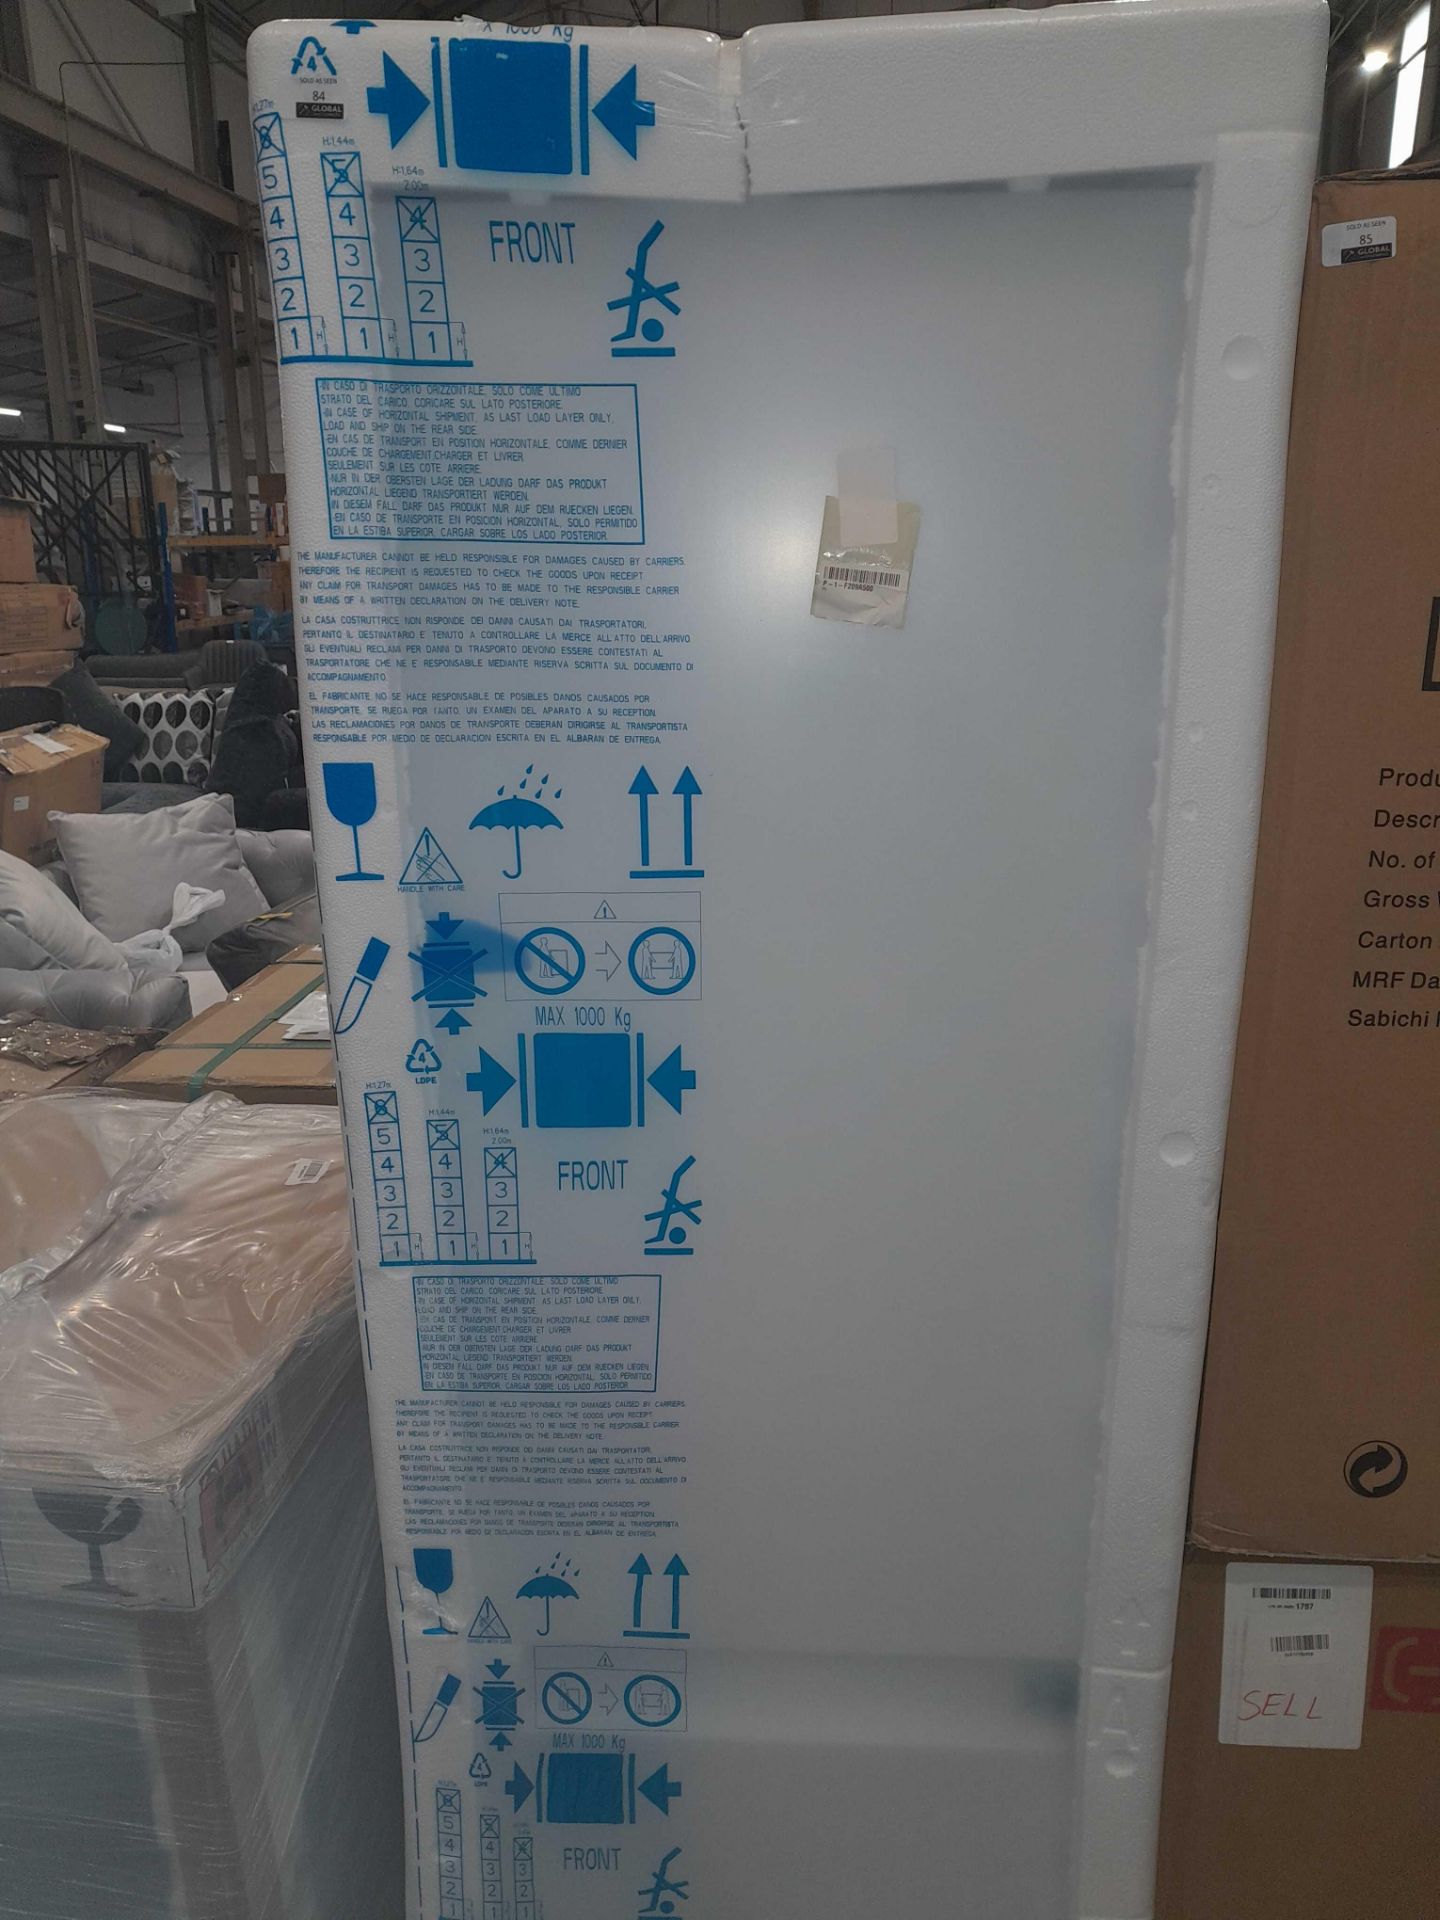 RRP £700 Brand New Factory Sealed Hotpoint Fridge Freezer - Image 2 of 3